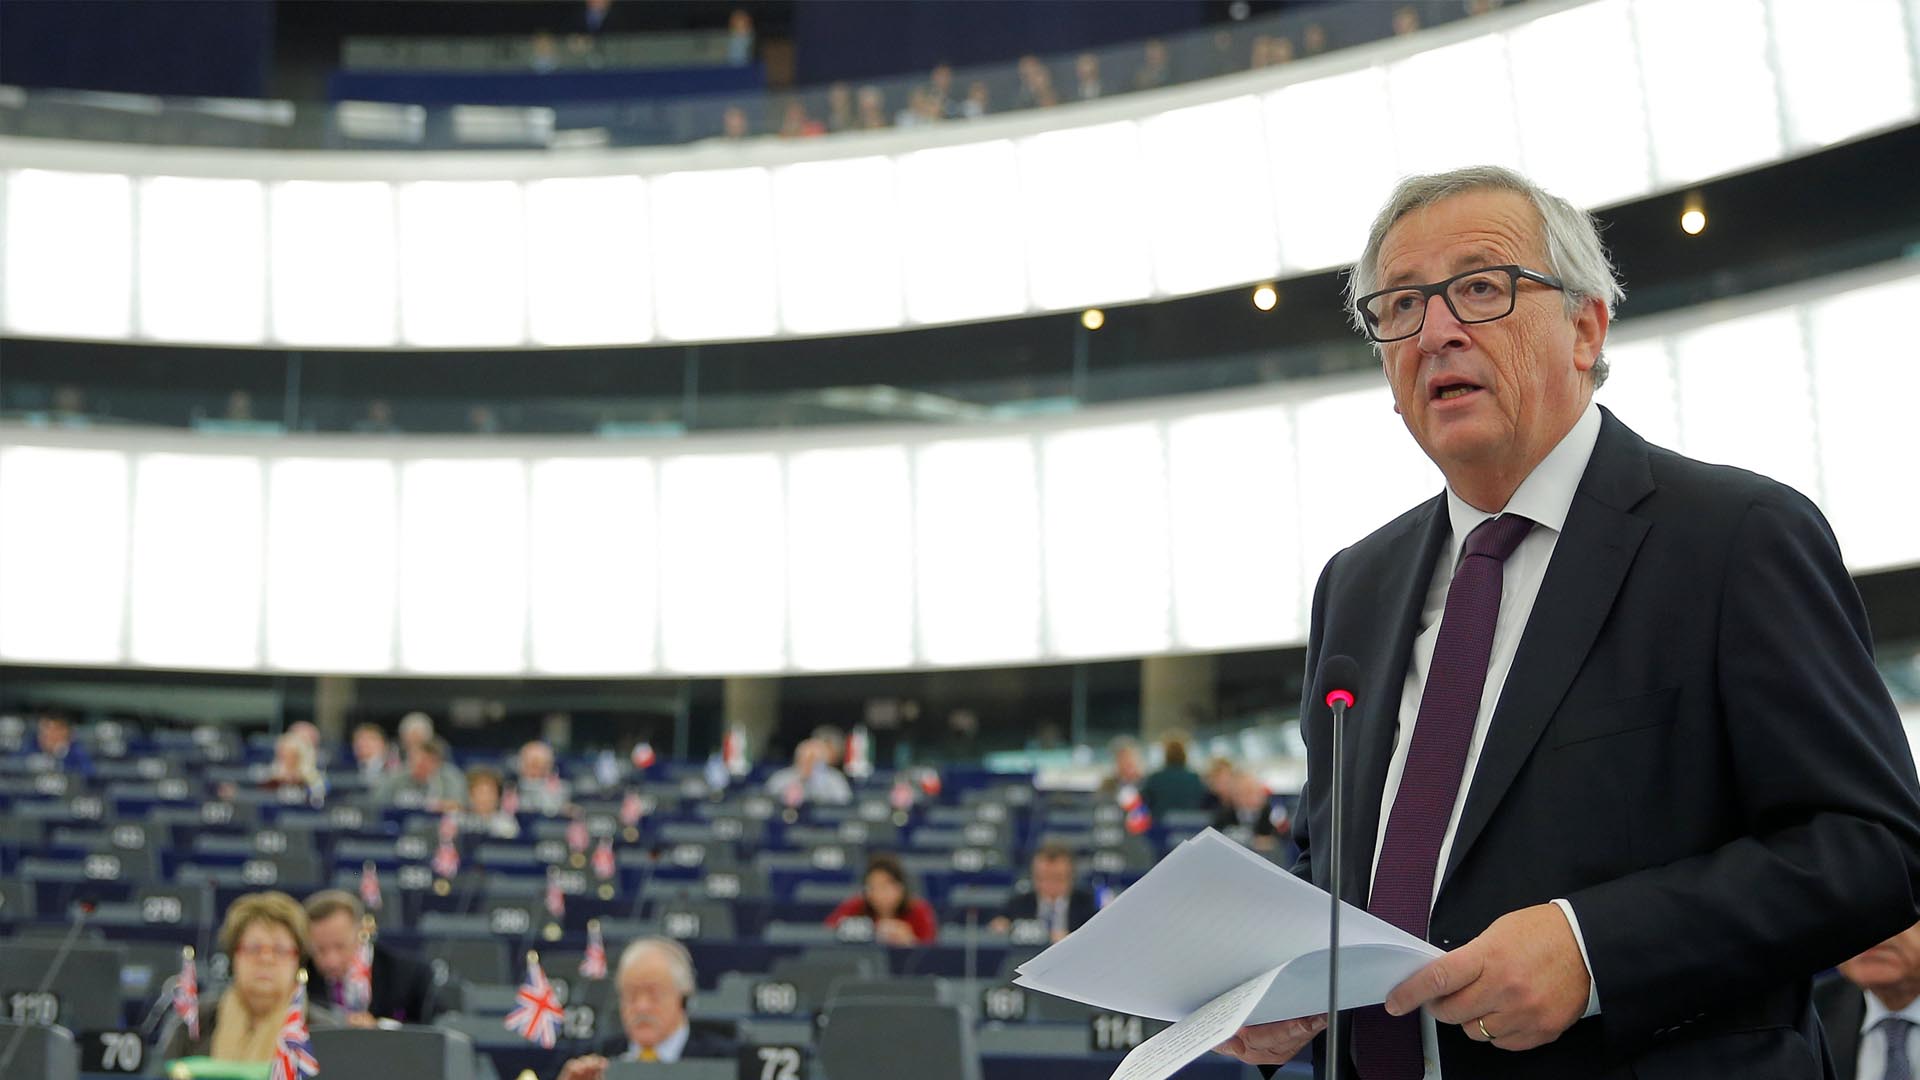 El presidente de la Comisión Europa espera desbloquear la firma necesaria para el tratado de libre comercio propuesto